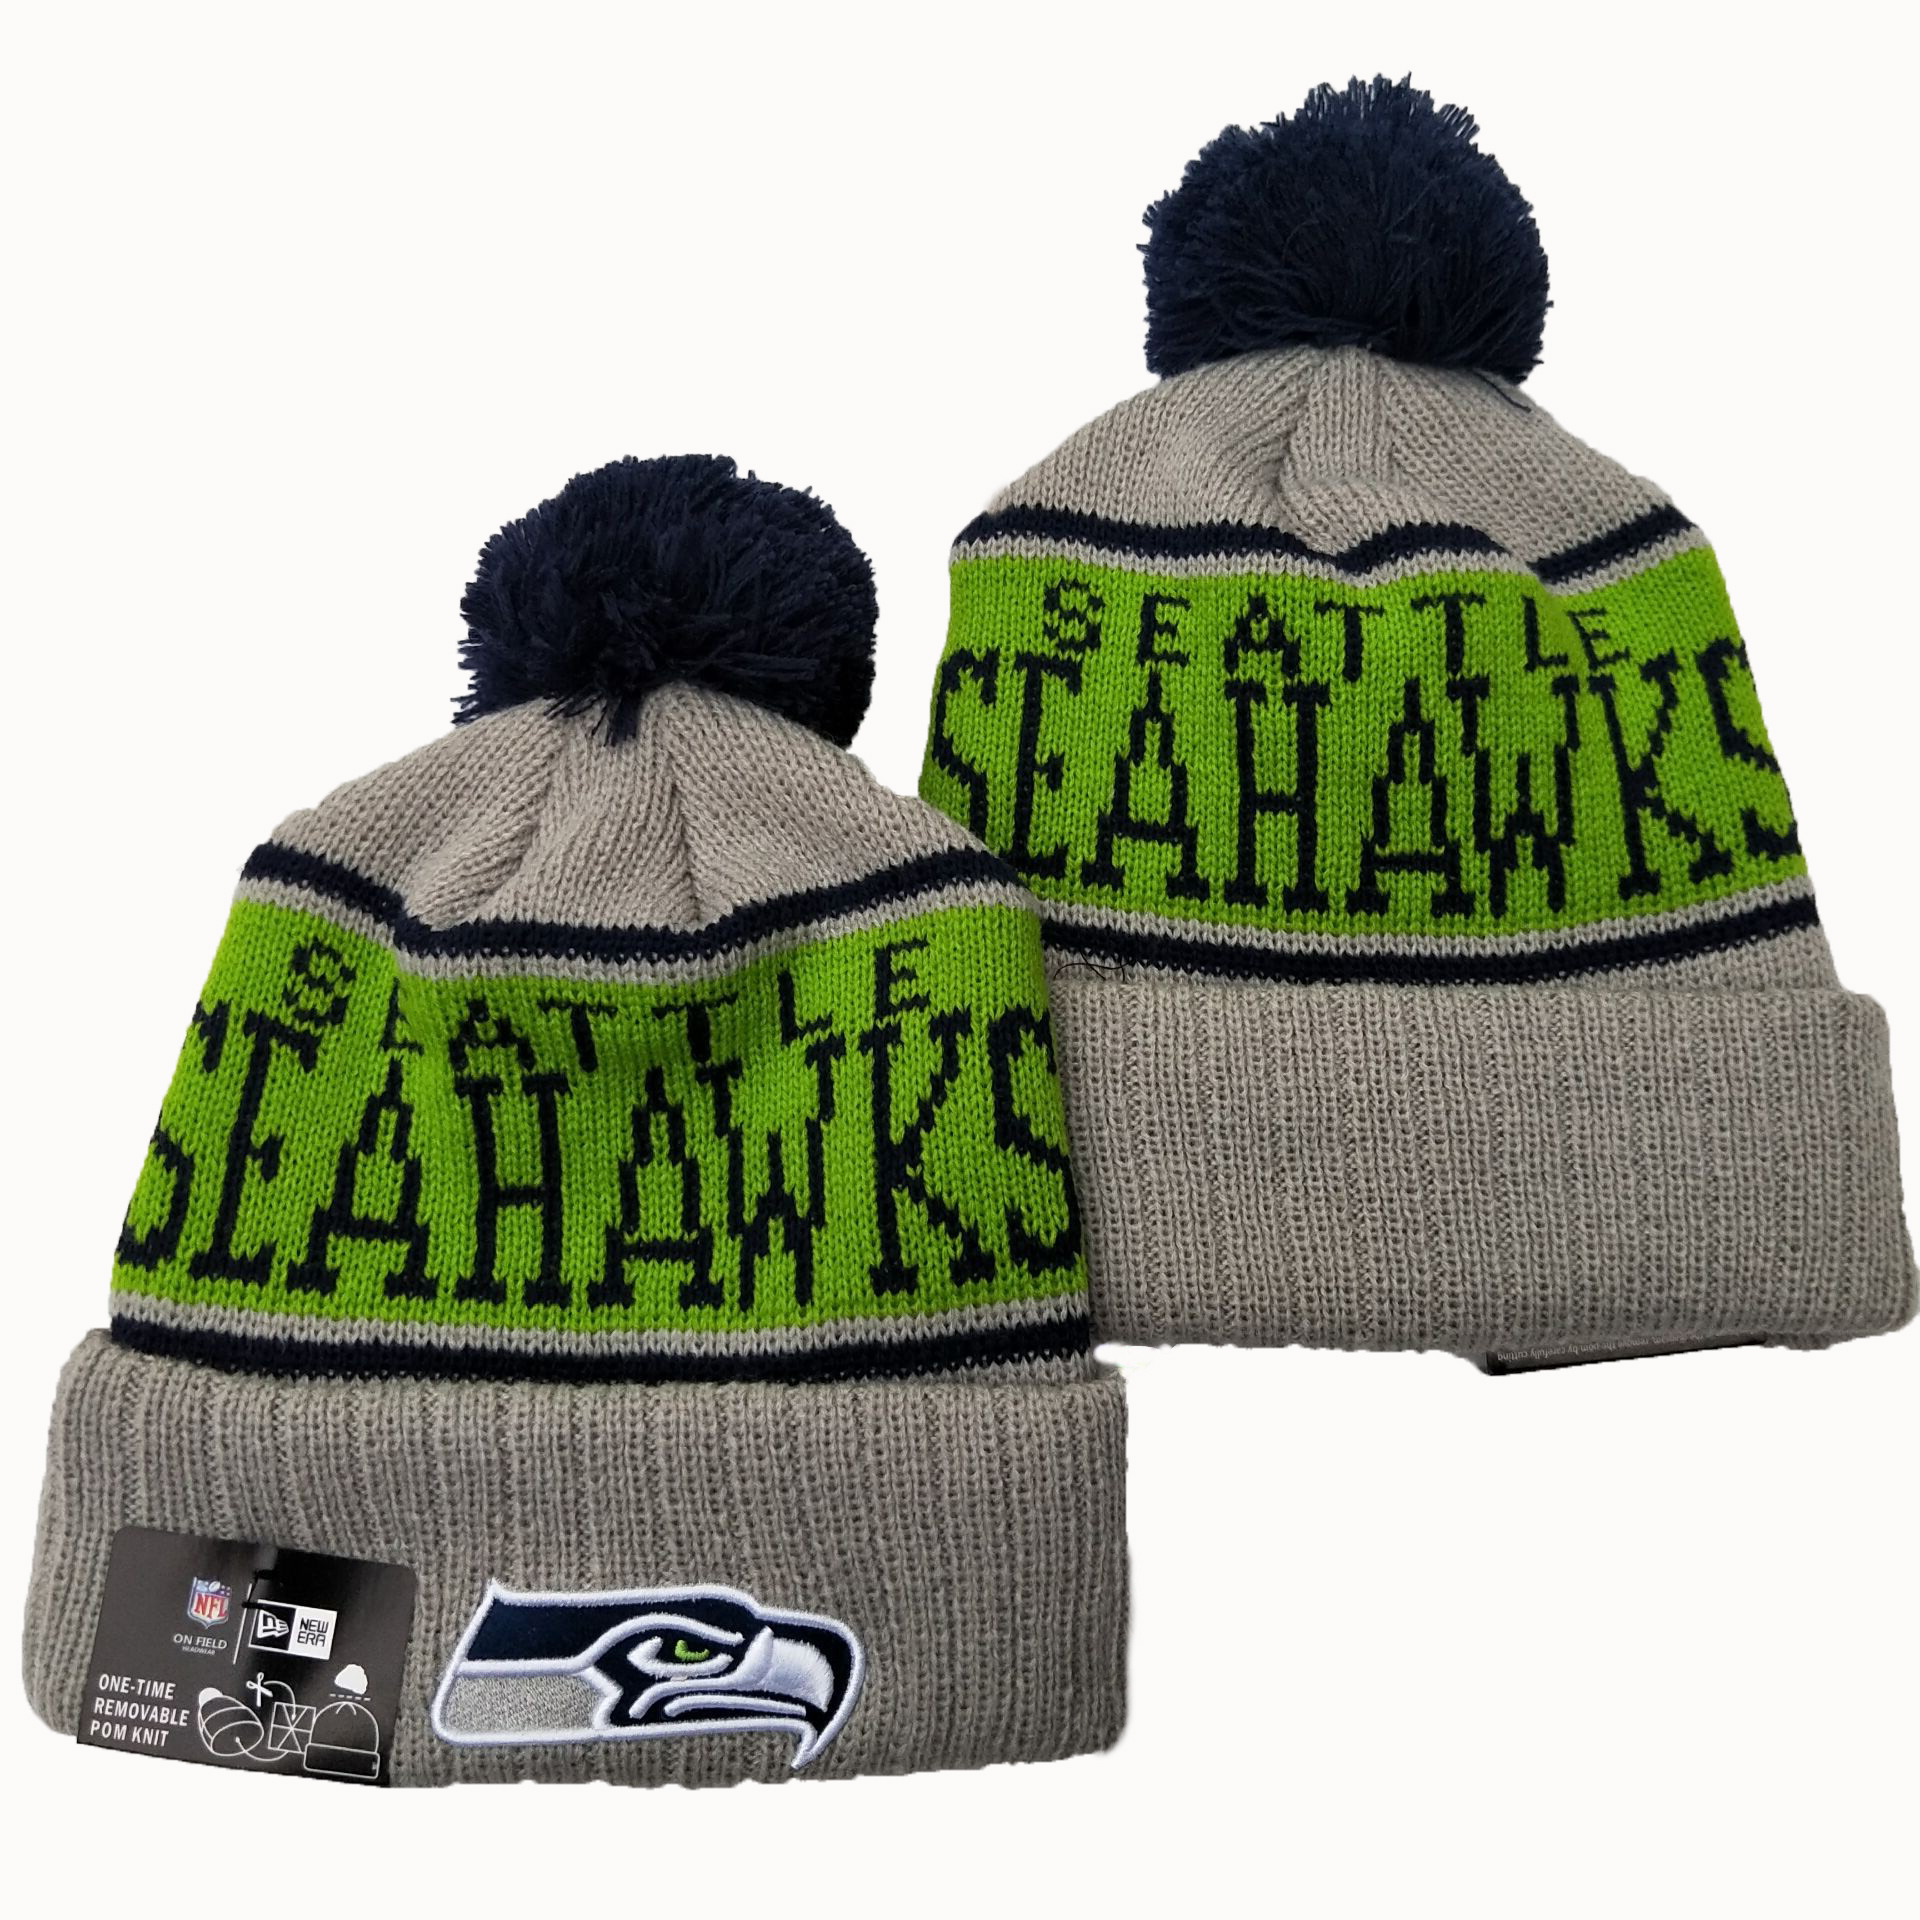 NFL Seattle Seahawks New Era 2019 Knit Hats 051